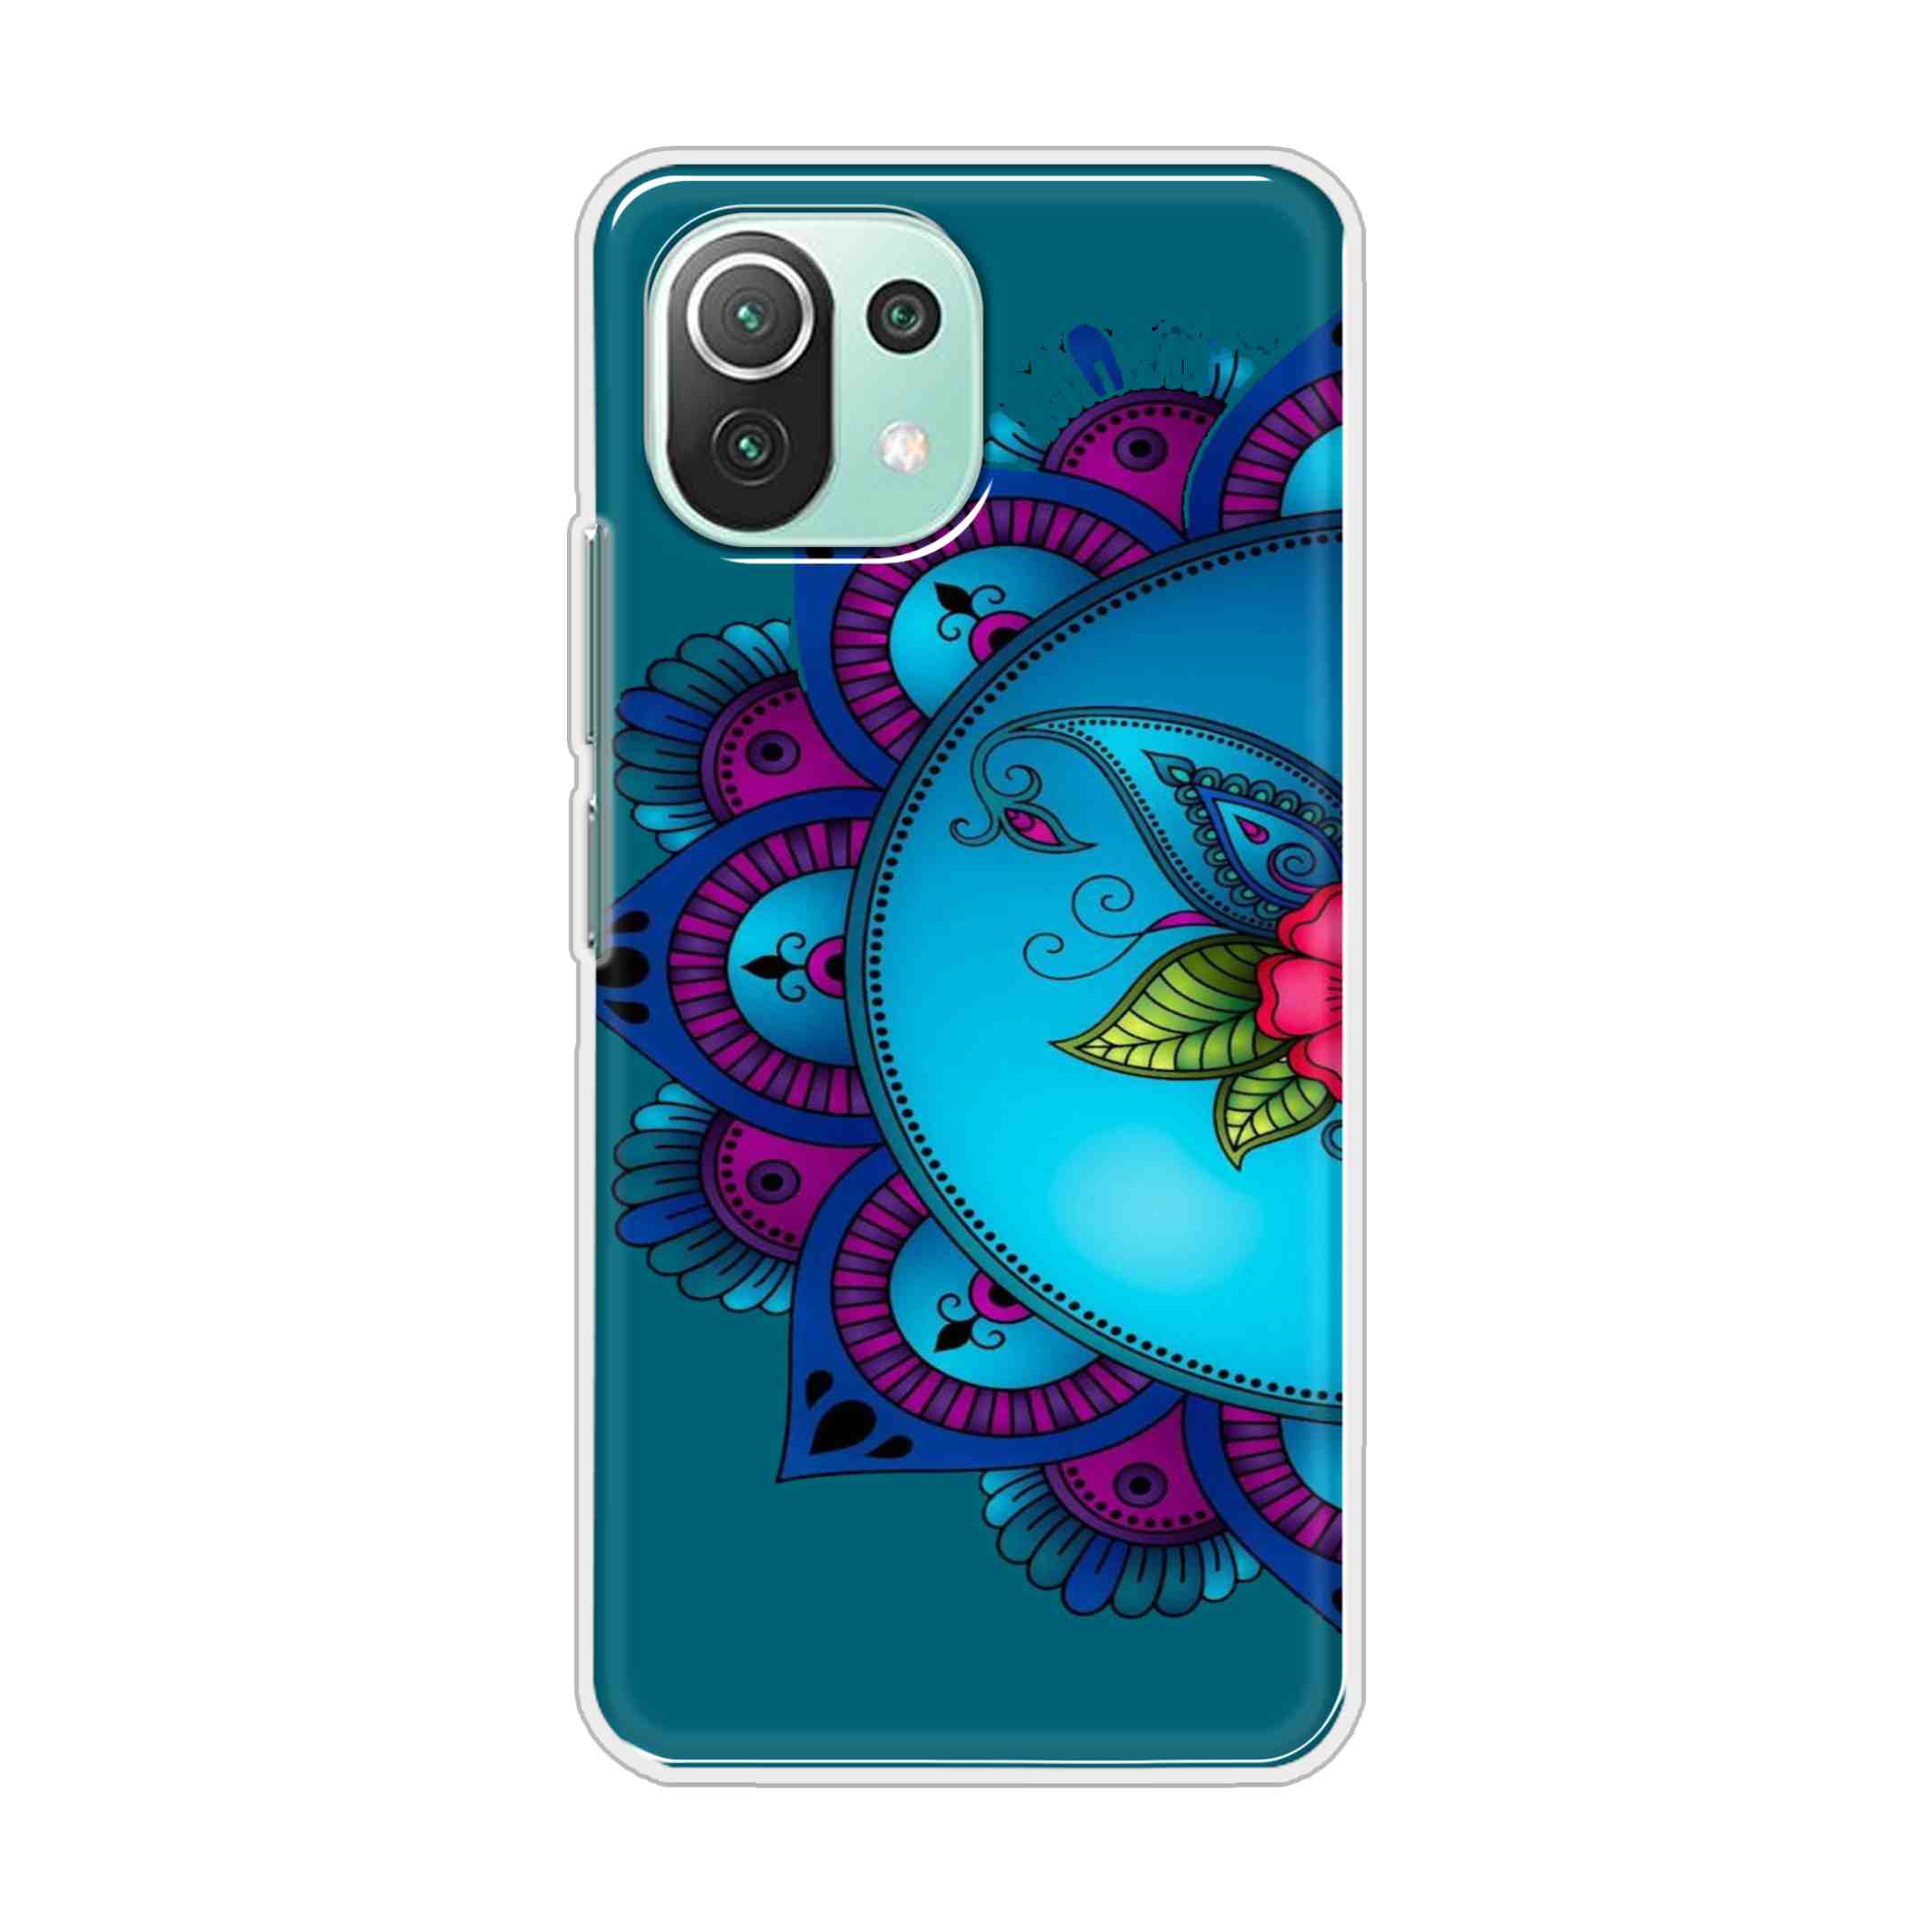 Buy Star Mandala Hard Back Mobile Phone Case Cover For Mi 11 Lite 5G Online